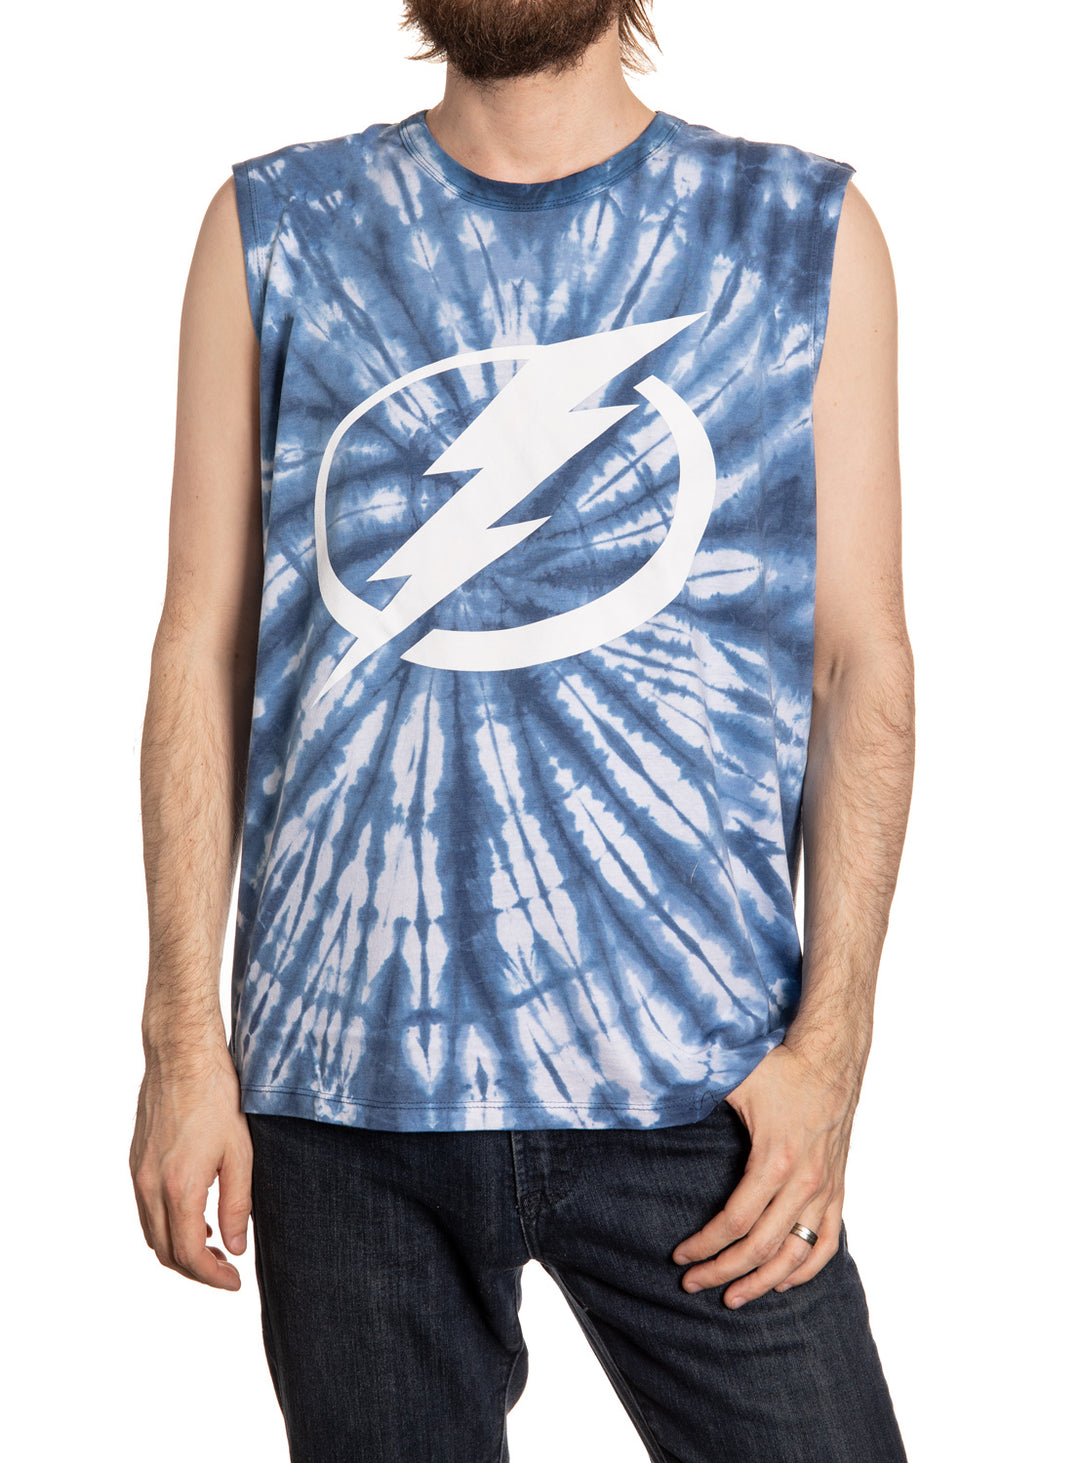 Tampa Bay Lightning Tie-Dye T-shirt